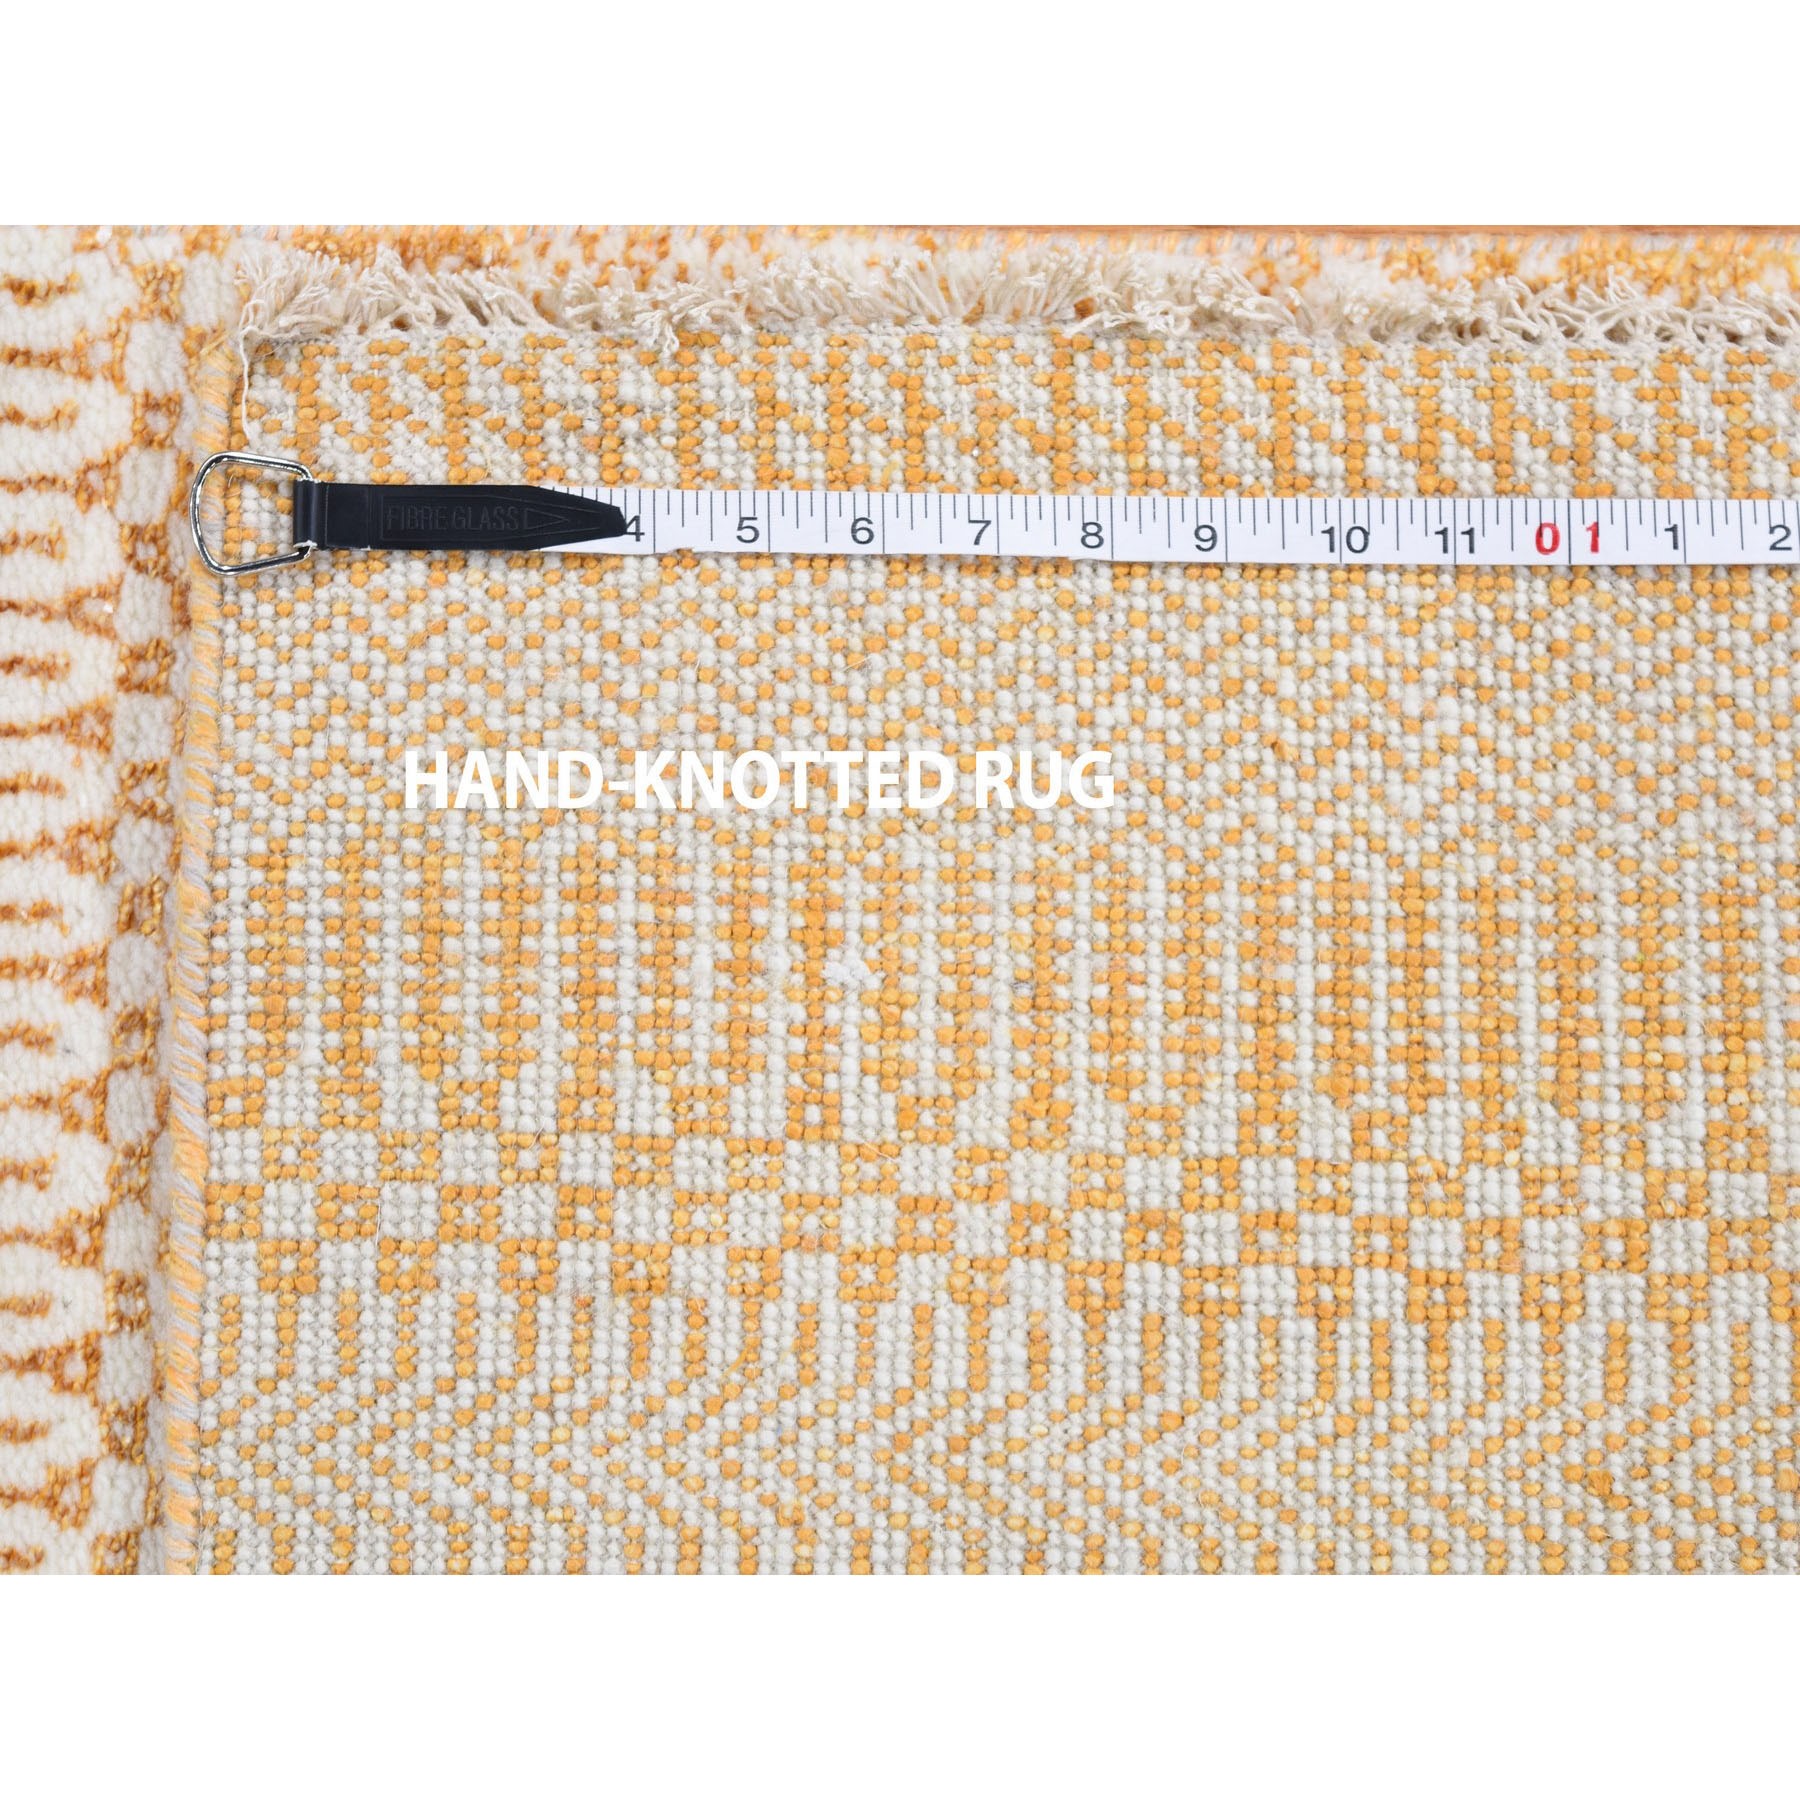 2-6 x7-10  Burnt Orange Grass Design Gabbeh Wool and Silk Runner Hand-Knotted Oriental Rug 